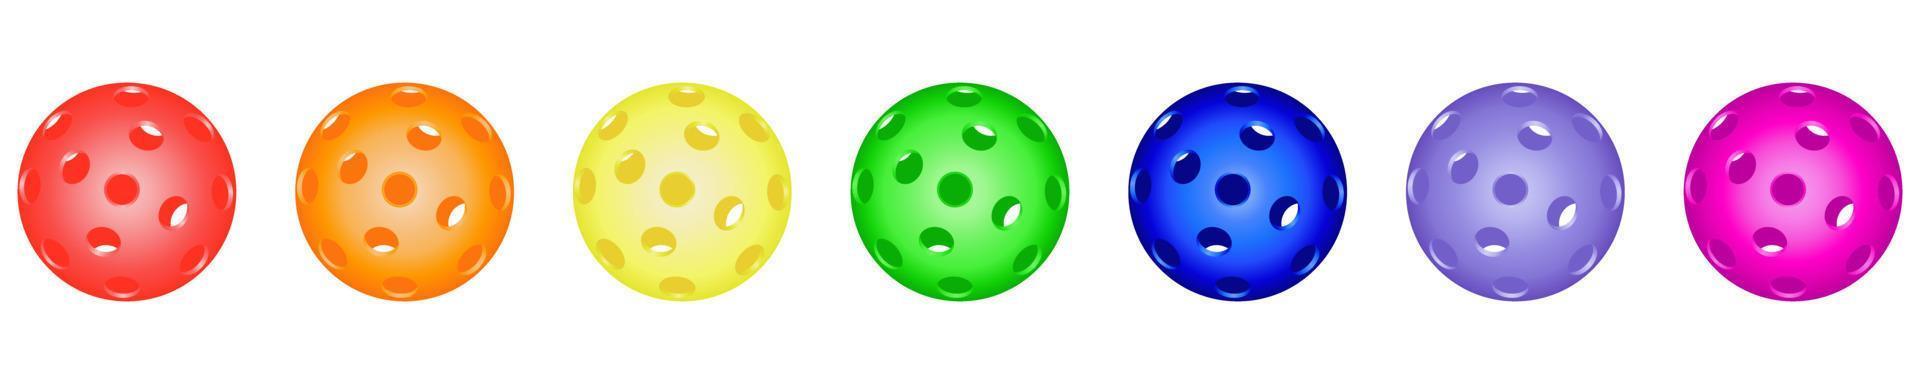 définir des boules de pickleball colorées et lumineuses. équipements sportifs de pickleball pour jeux extérieurs. sports actifs pour personnes âgées, pour enfants, pour toute la famille vecteur